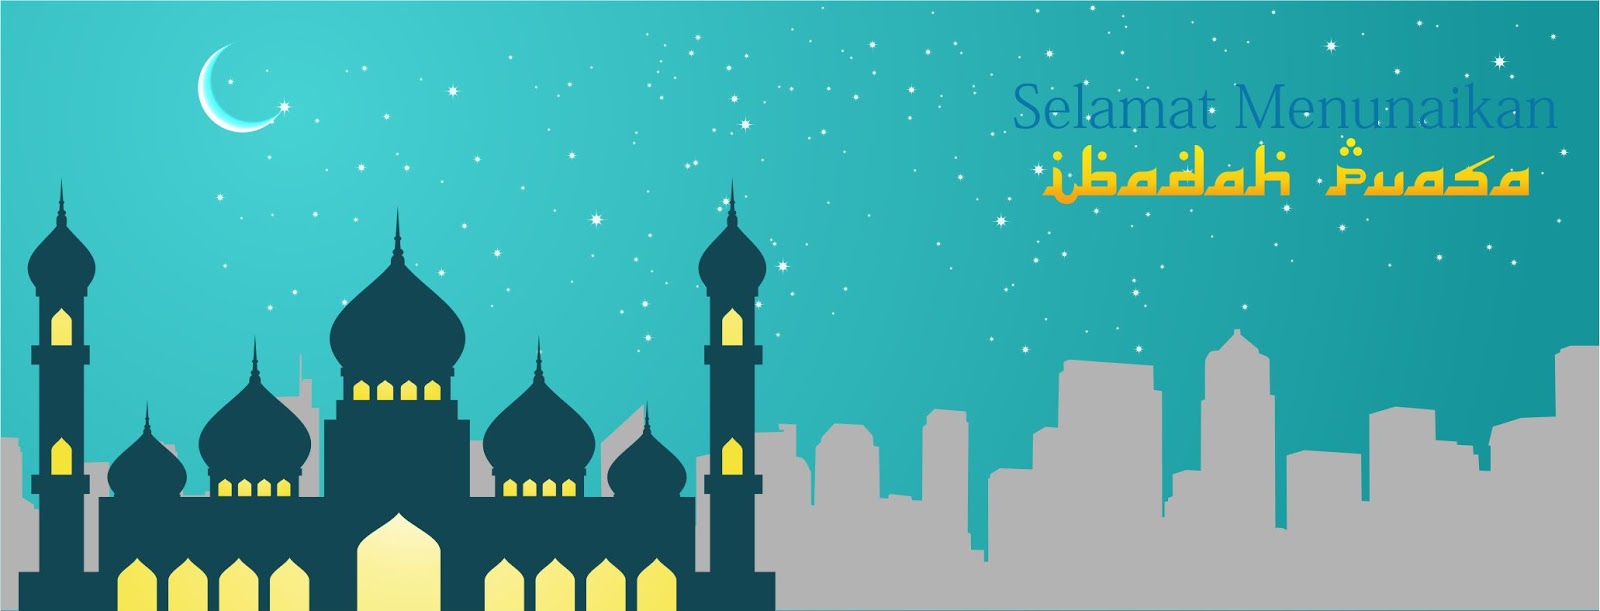 Download Desain  Template Ramadhan  Asal Tau